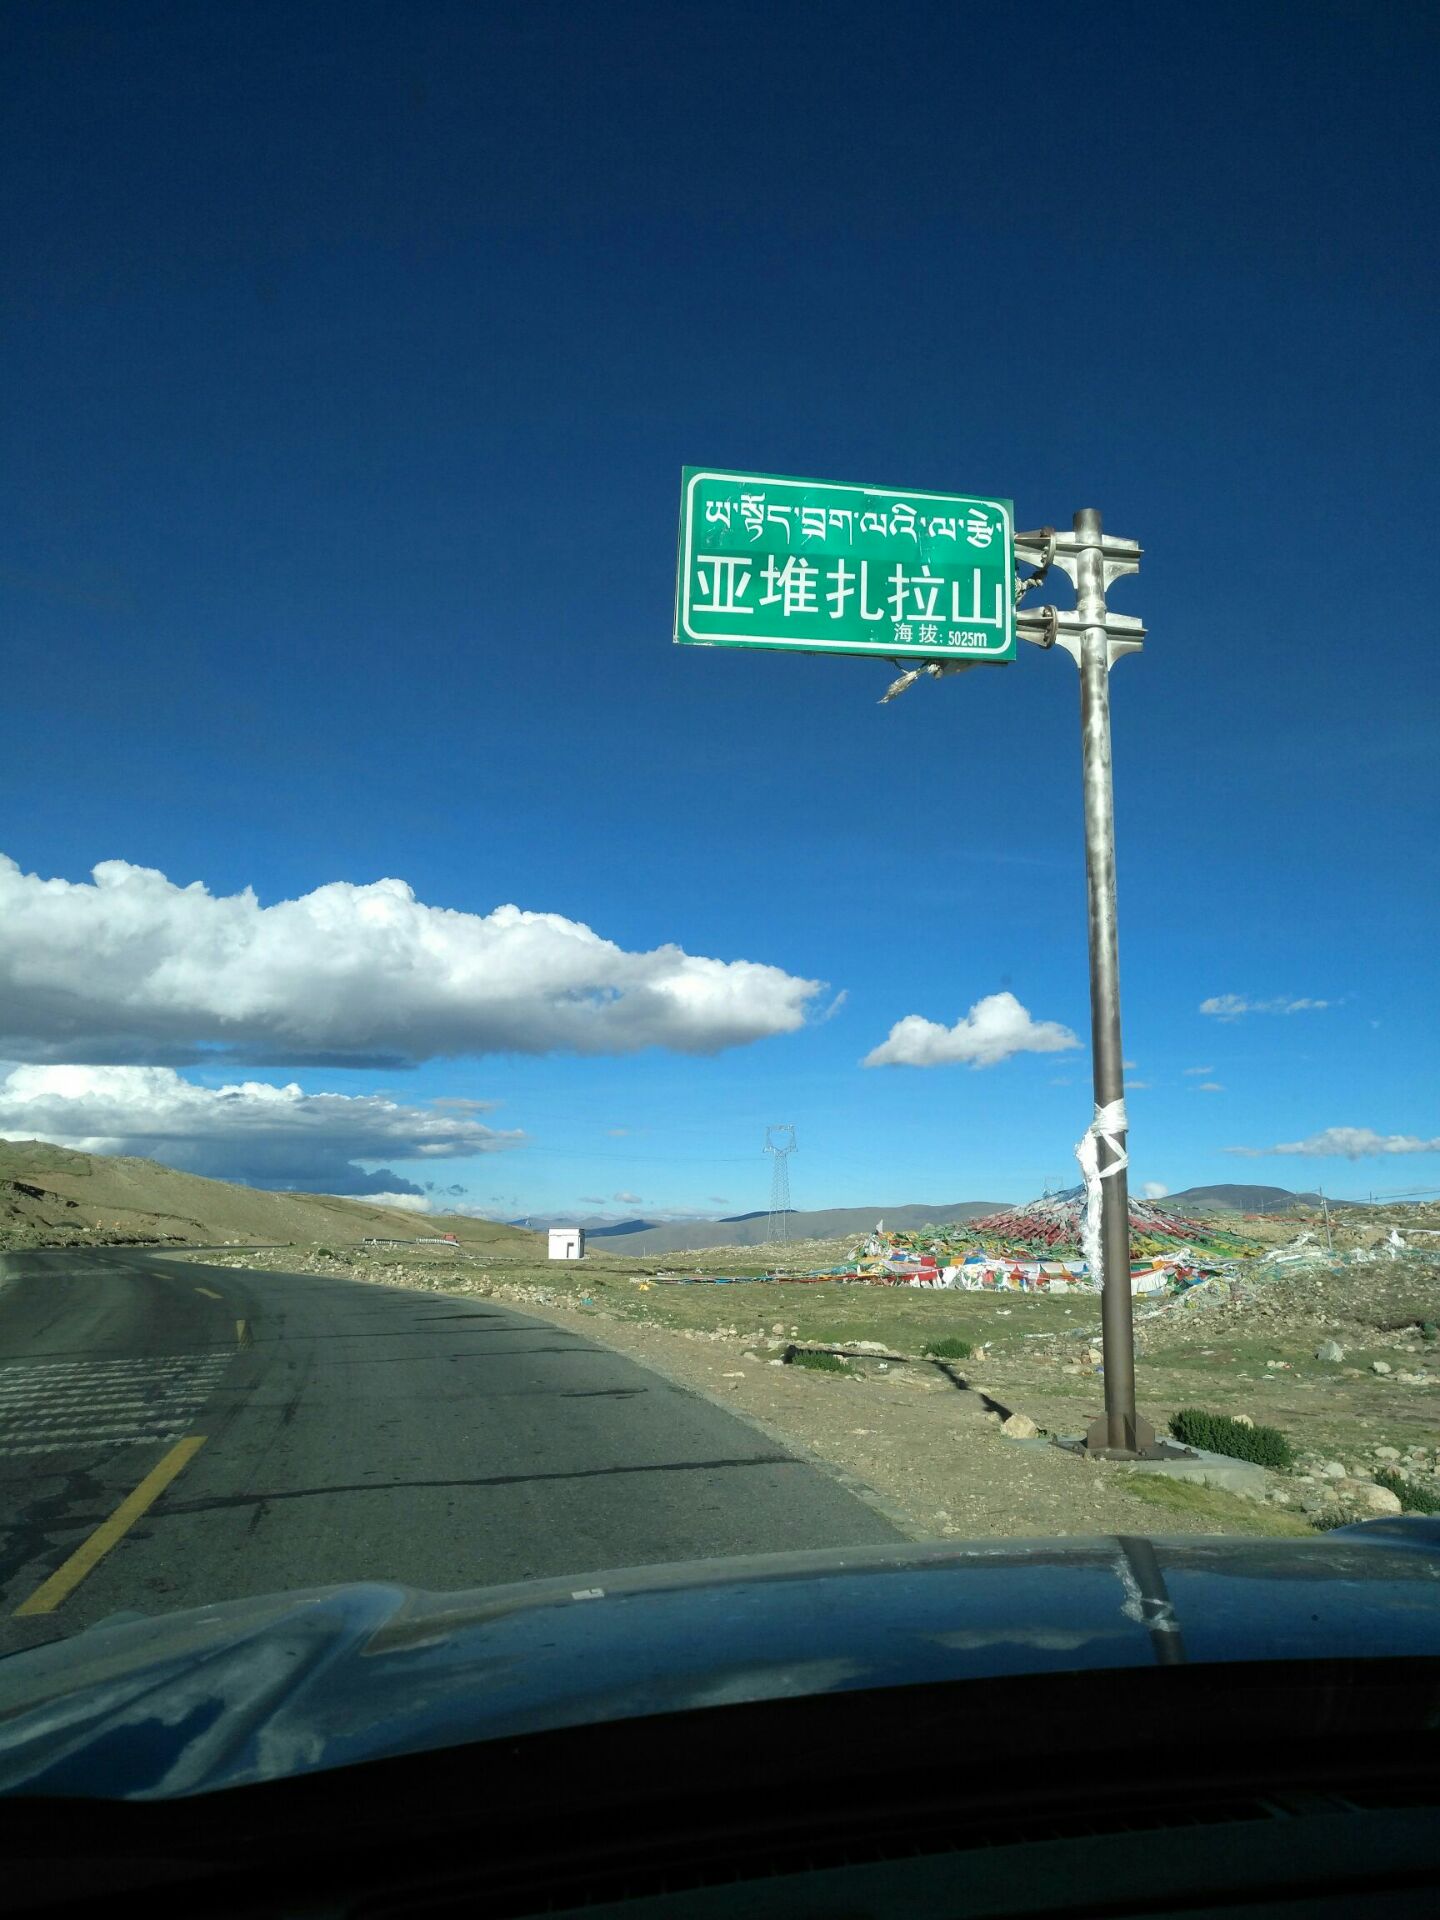 西藏…… 世界最后一片净土 离天最近的地方 天更蓝，云更白，心更美，笑更甜。